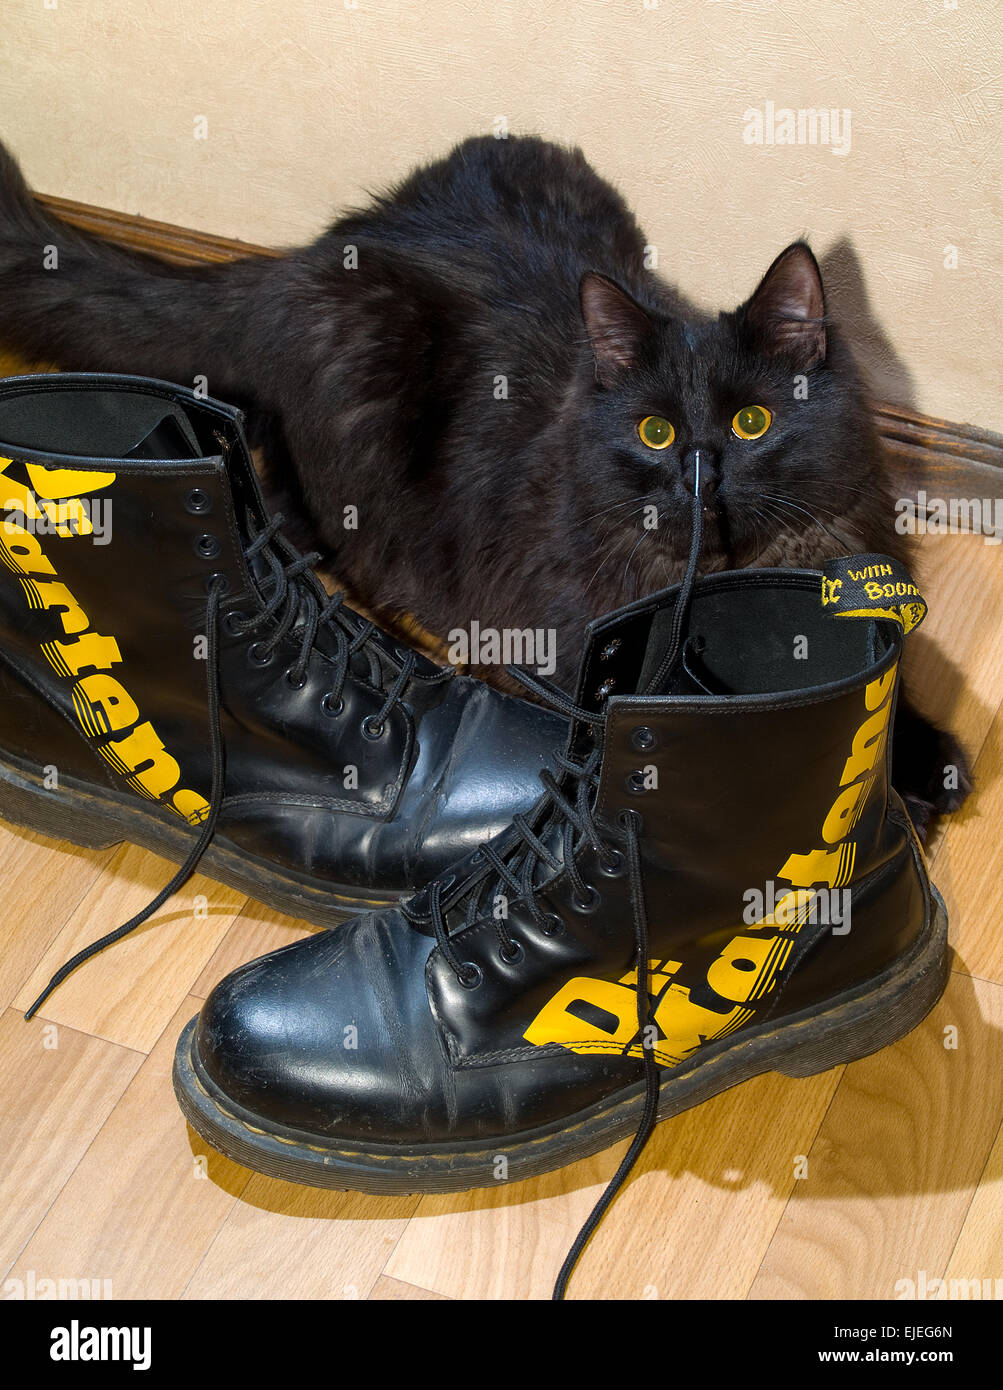 Le chat avec des bottes Photo Stock - Alamy